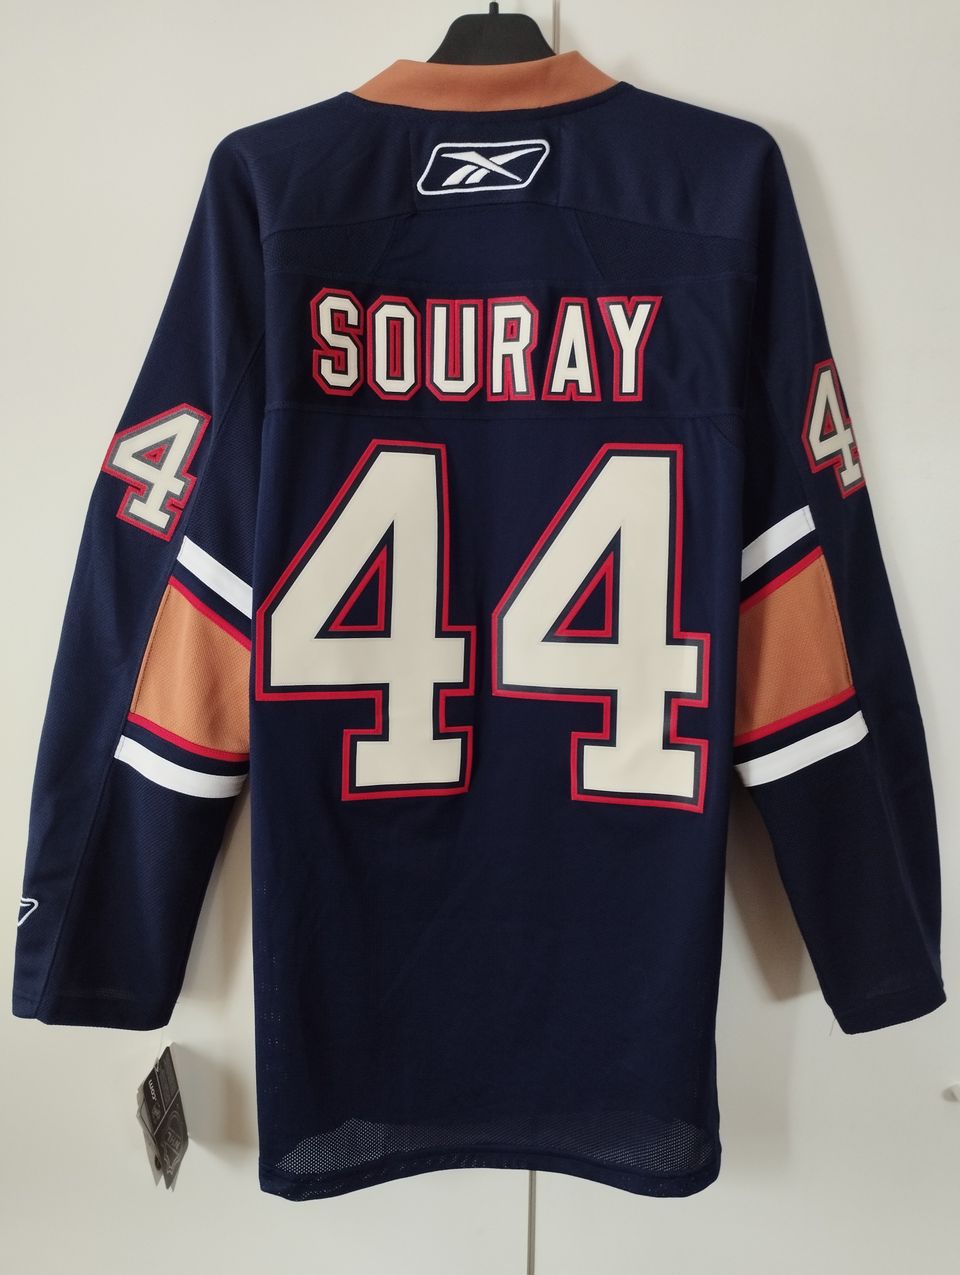 Aito Edmonton Oilers pelipaita Souray #44